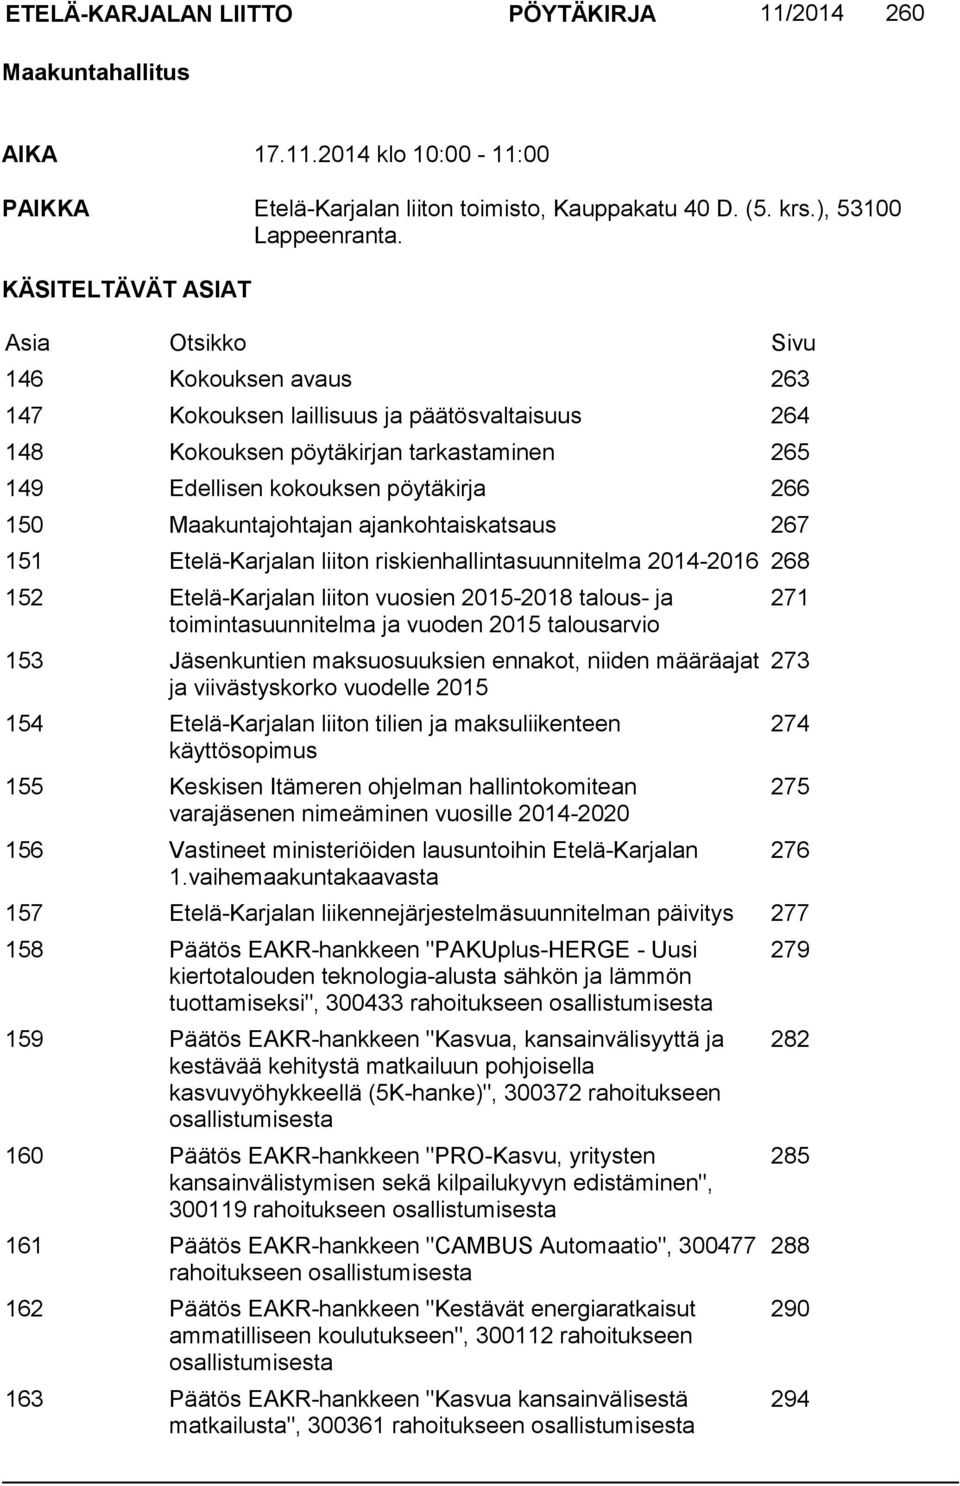 Maakuntajohtajan ajankohtaiskatsaus 267 151 Etelä-Karjalan liiton riskienhallintasuunnitelma 2014-2016 268 152 Etelä-Karjalan liiton vuosien 2015-2018 talous- ja toimintasuunnitelma ja vuoden 2015